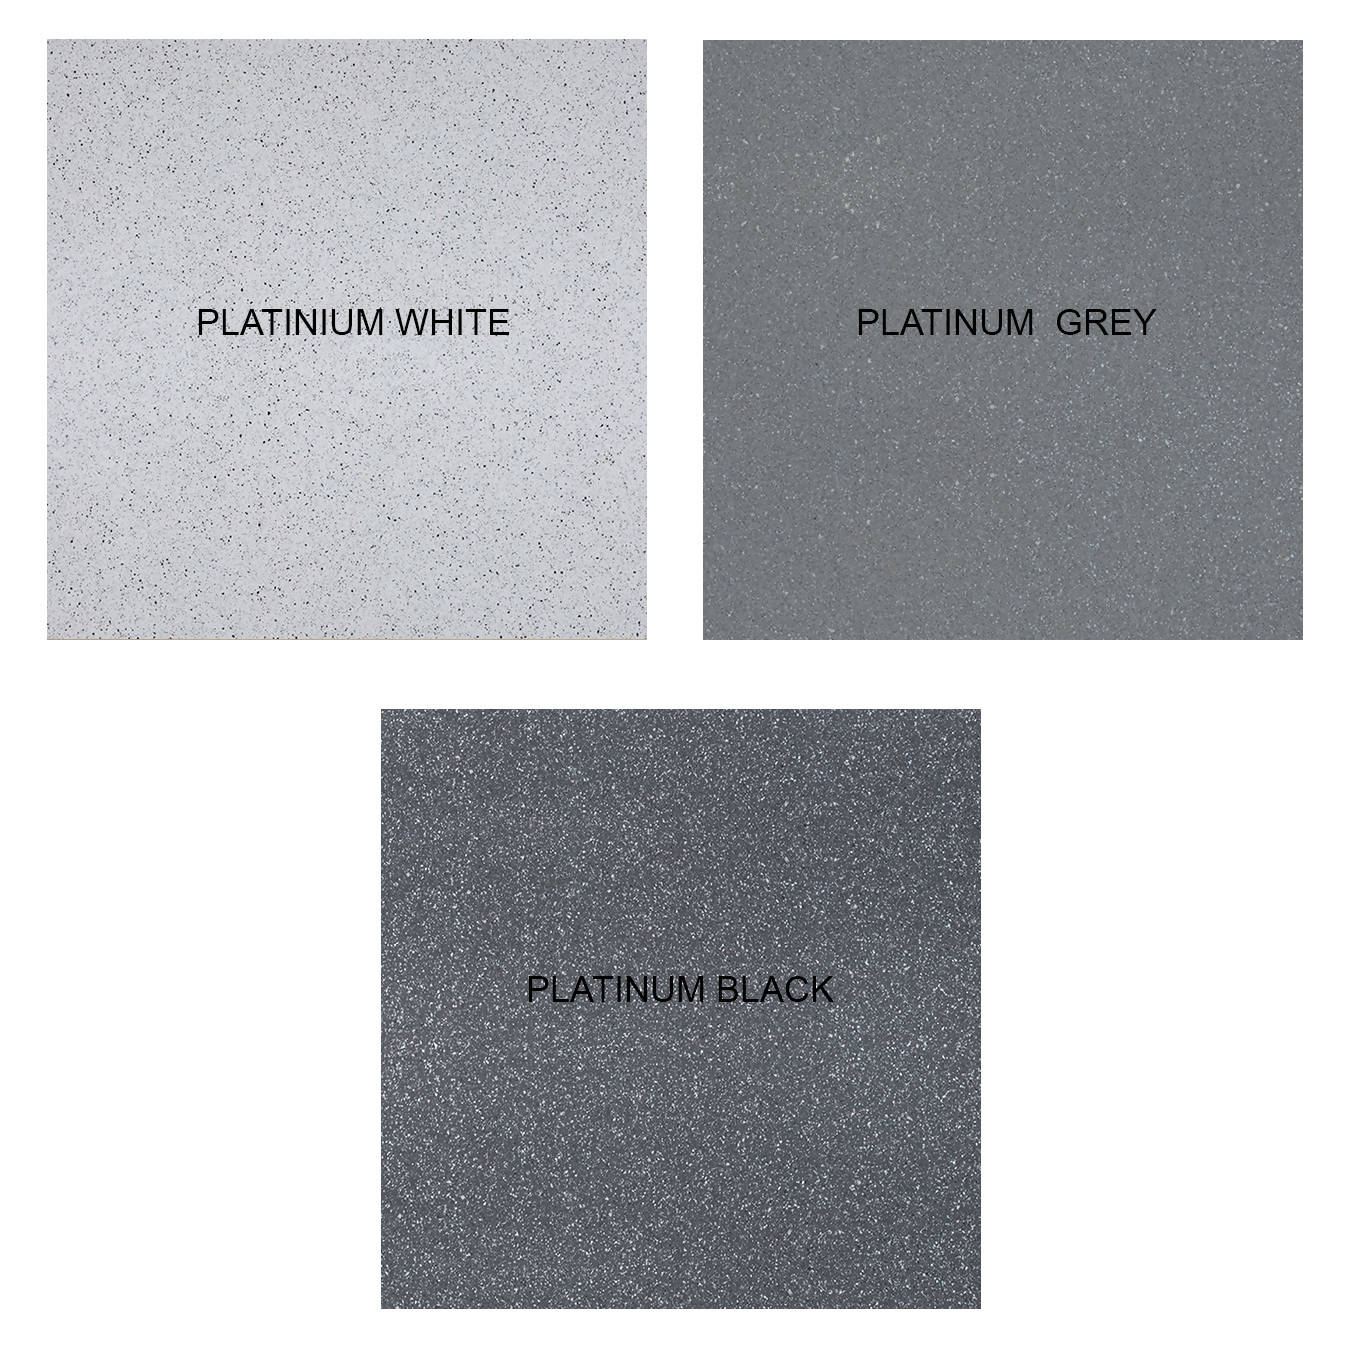 PLATINUM BLACK QUARTZ,Quartz,Artemi,www.work-tops.com